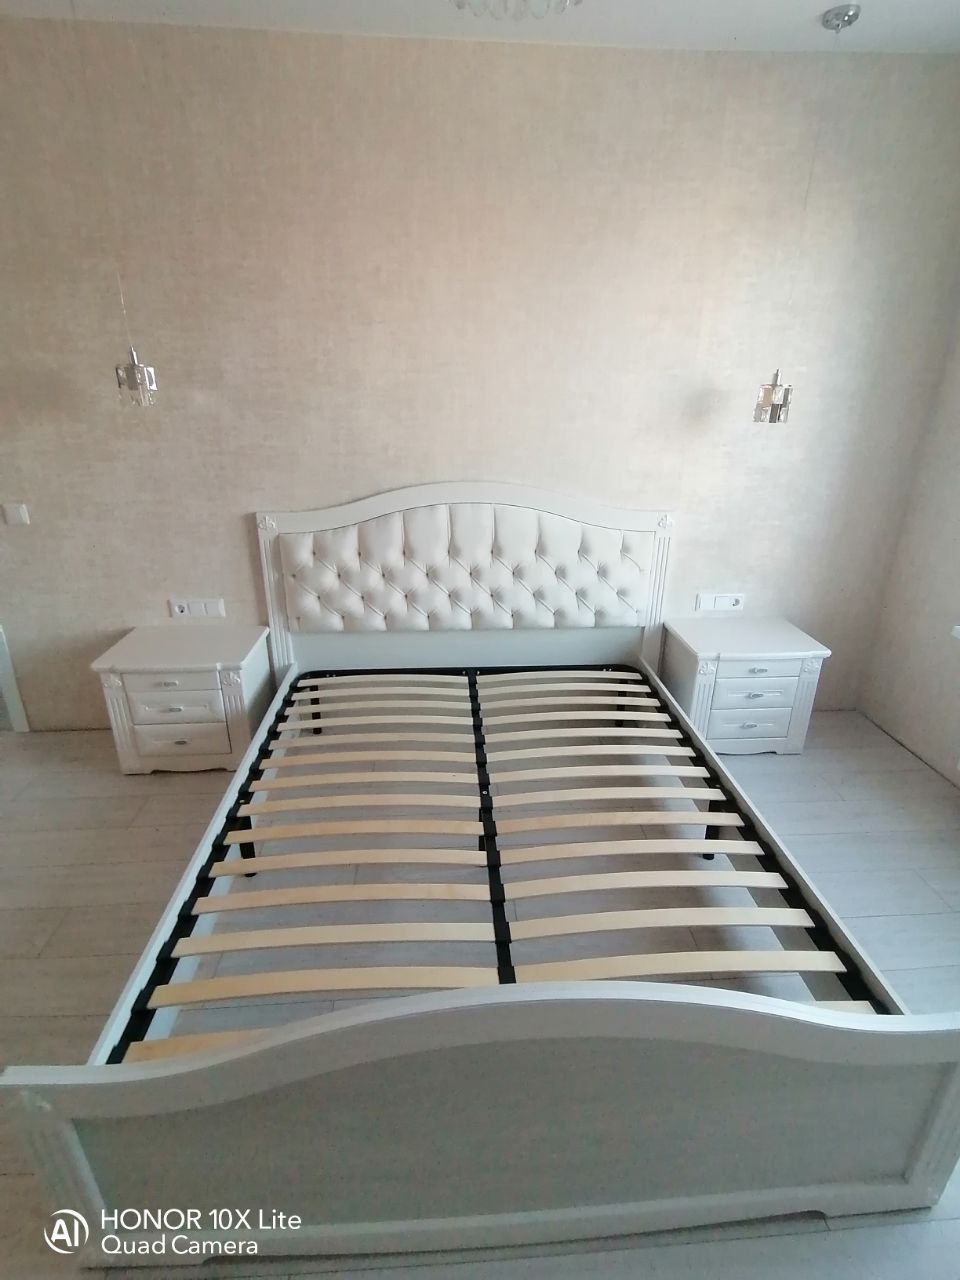 Двуспальная кровать "Сорренто"  140 х 200 с подъемным механизмом цвет ясень серебро изножье низкое